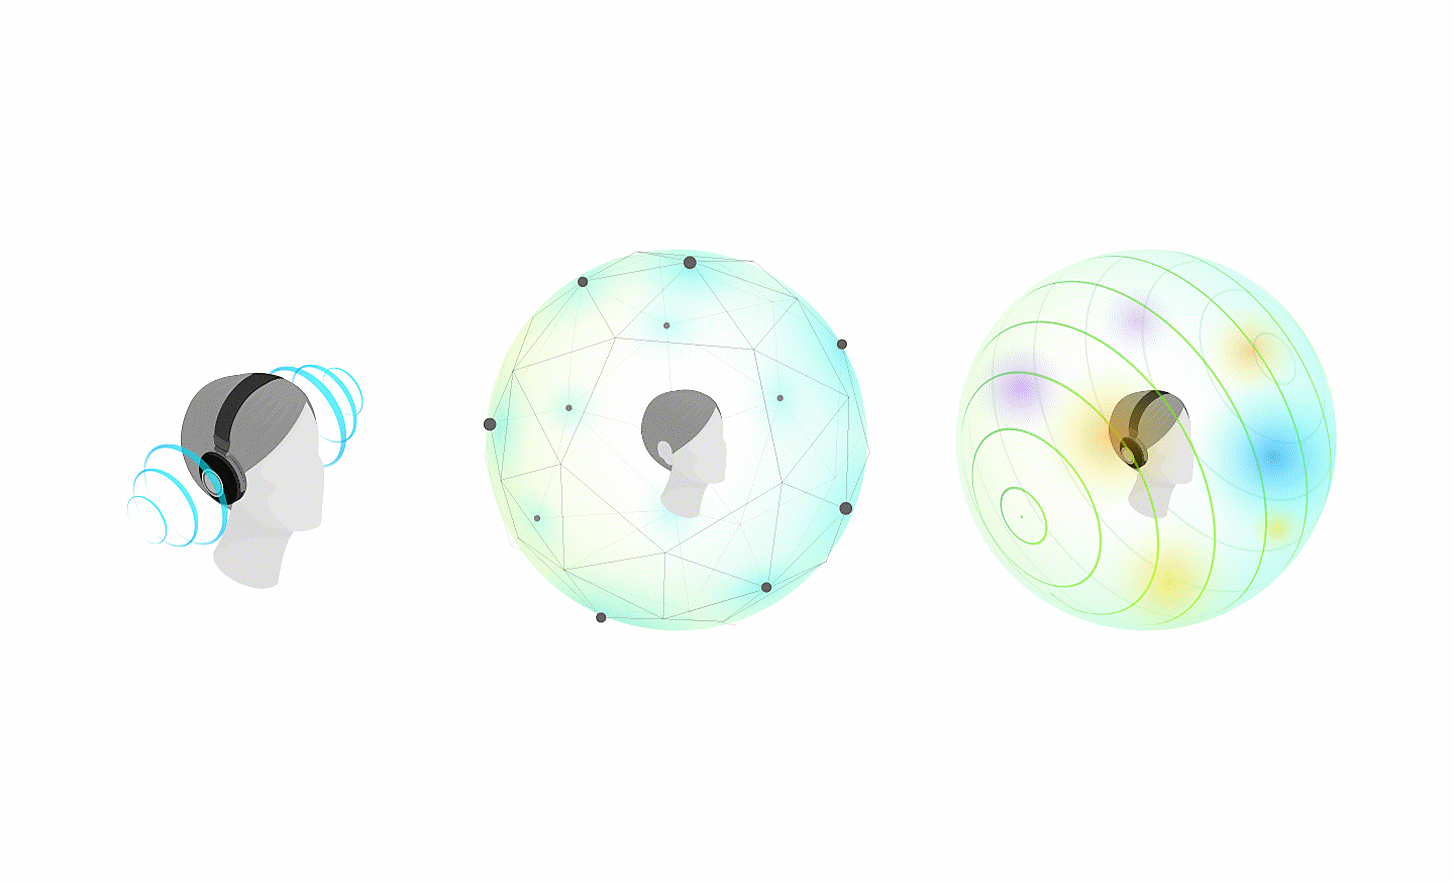 Image de trois têtes entourées de lignes, de filets et de globes représentant le son